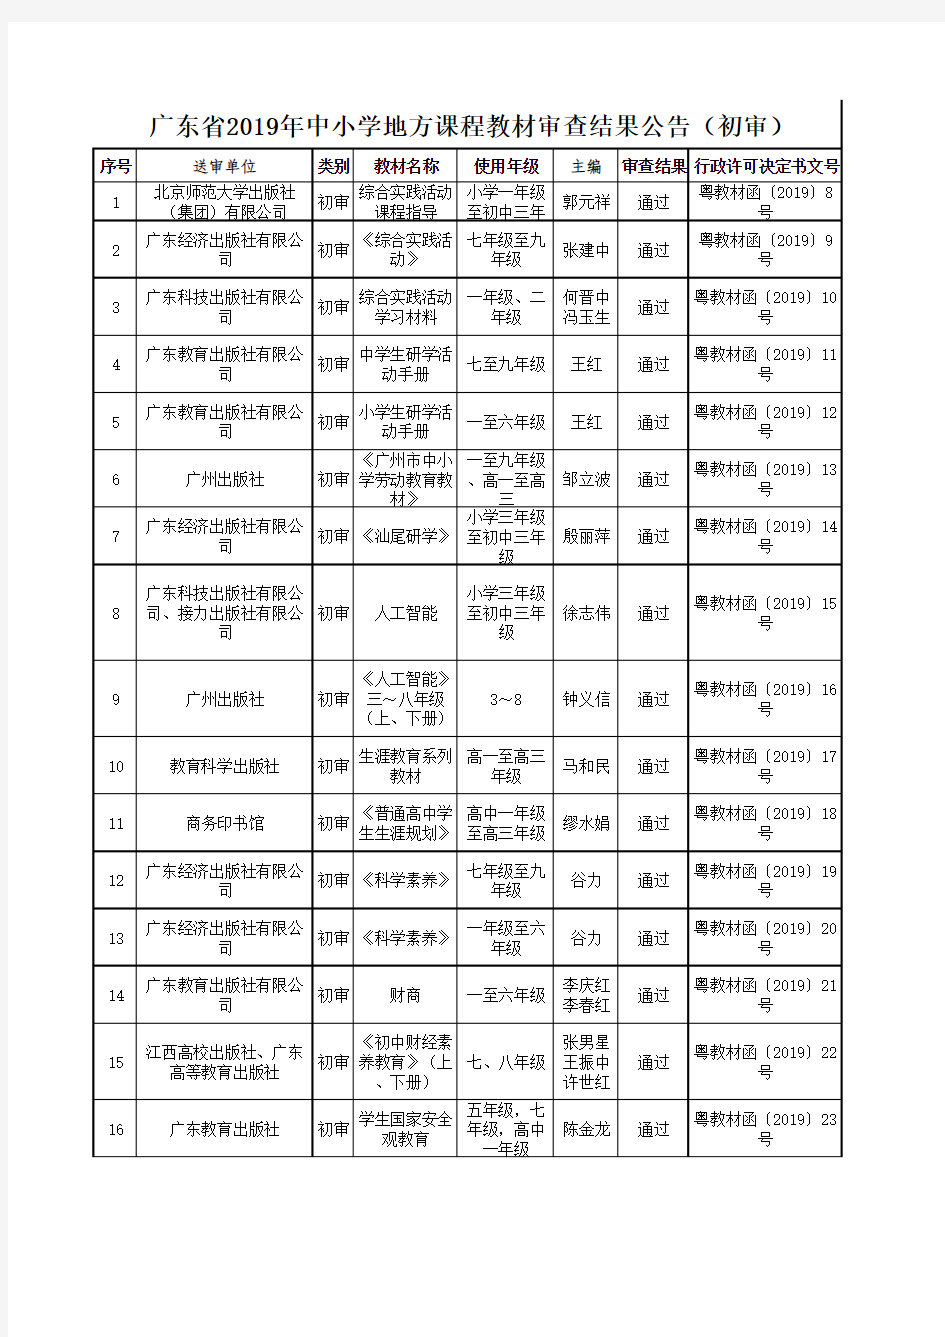 广东省2019年中小学地方课程教材审查结果公示